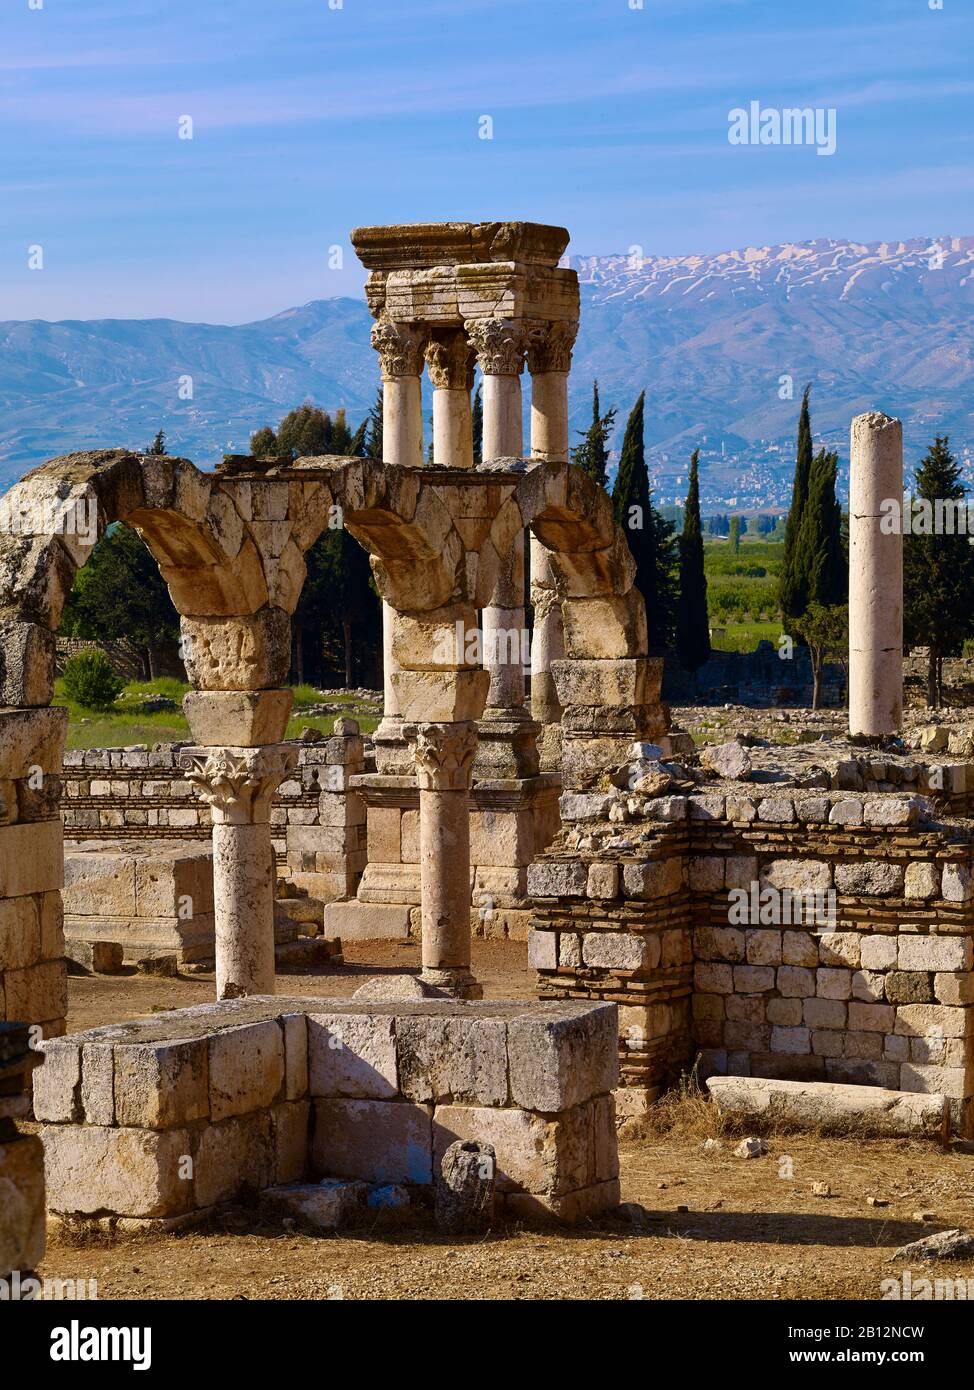 Montagnes du Liban et tétrapylon de l'ancienne ville d'Anjar, c'est-à-dire Haoush Mousa, Liban, Moyen-Orient Banque D'Images